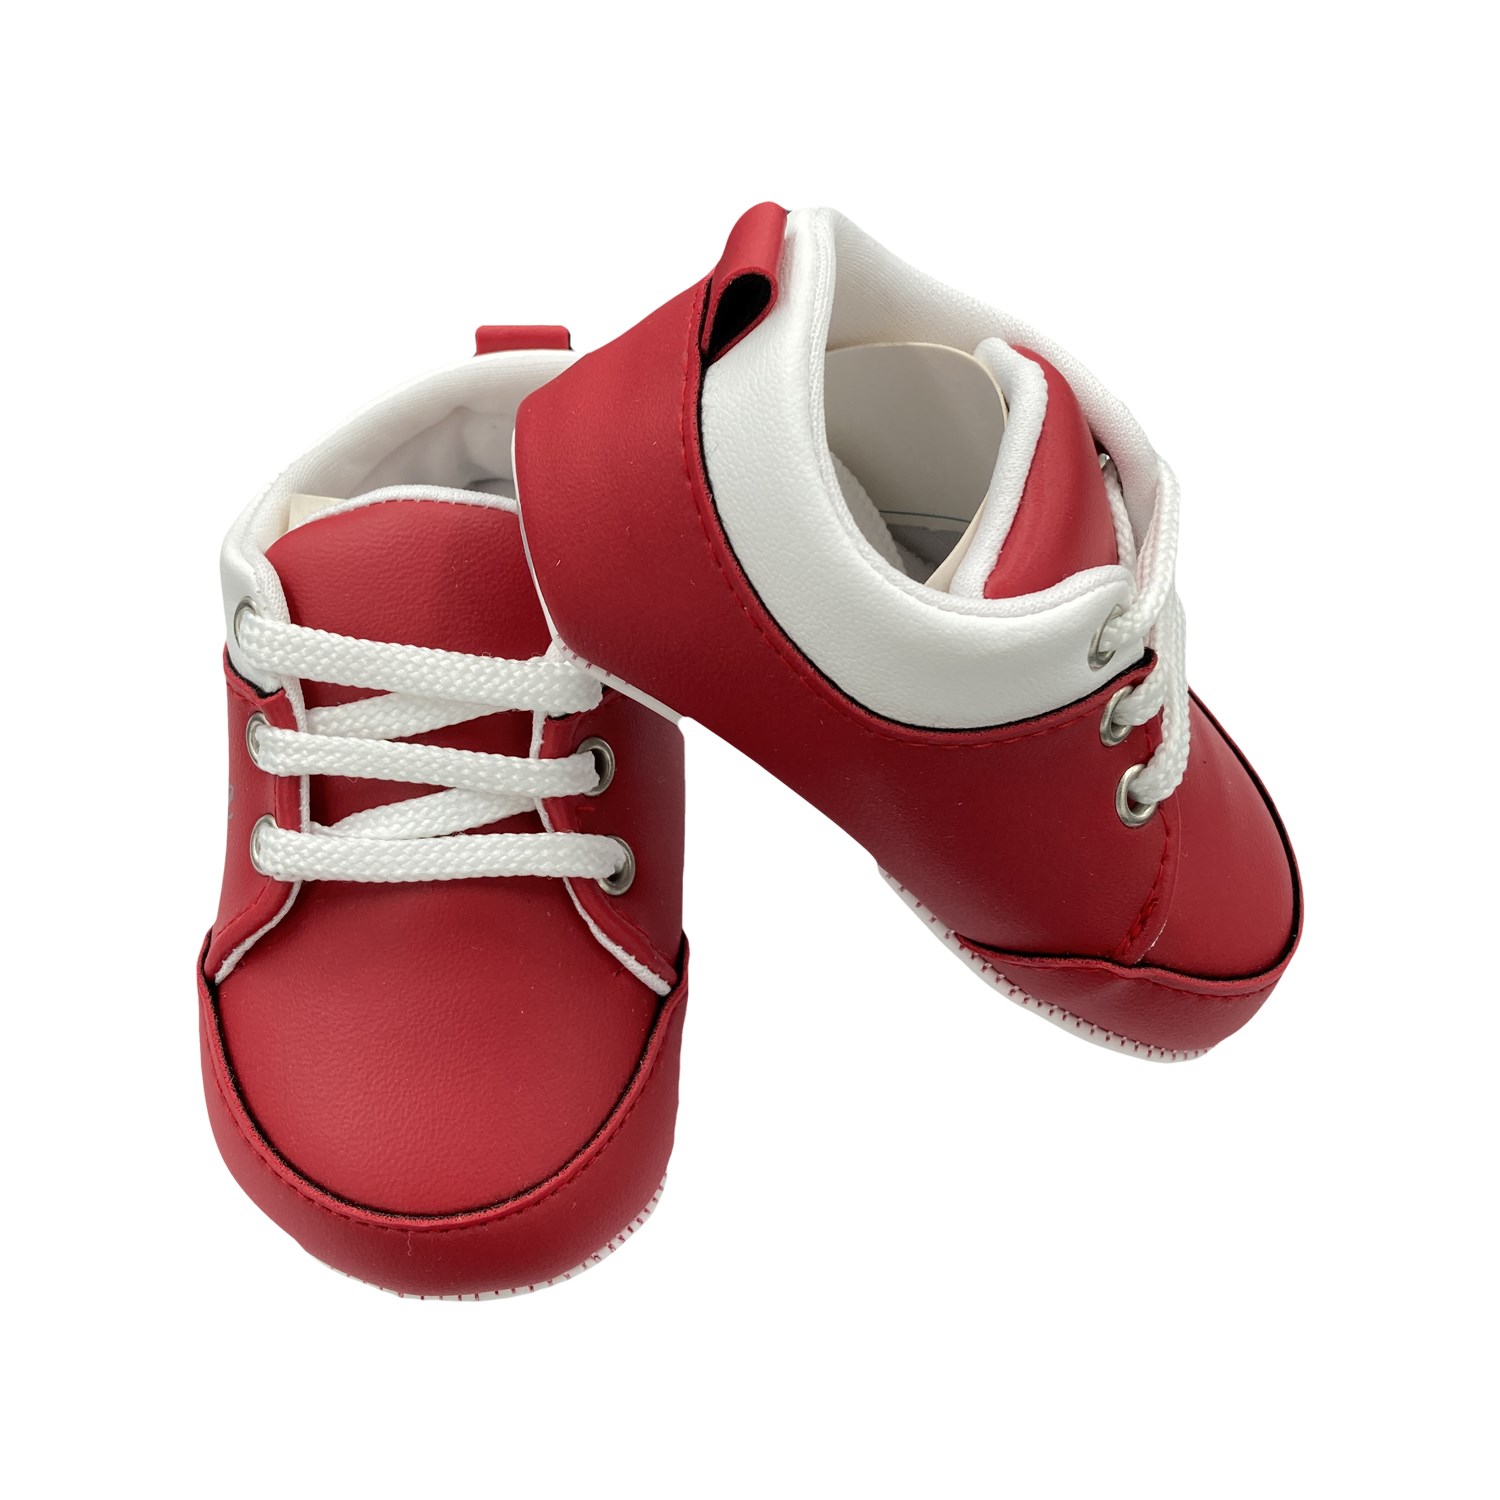 Papulin Lüks Bebek Ayakkabısı 2139 Kırmızı